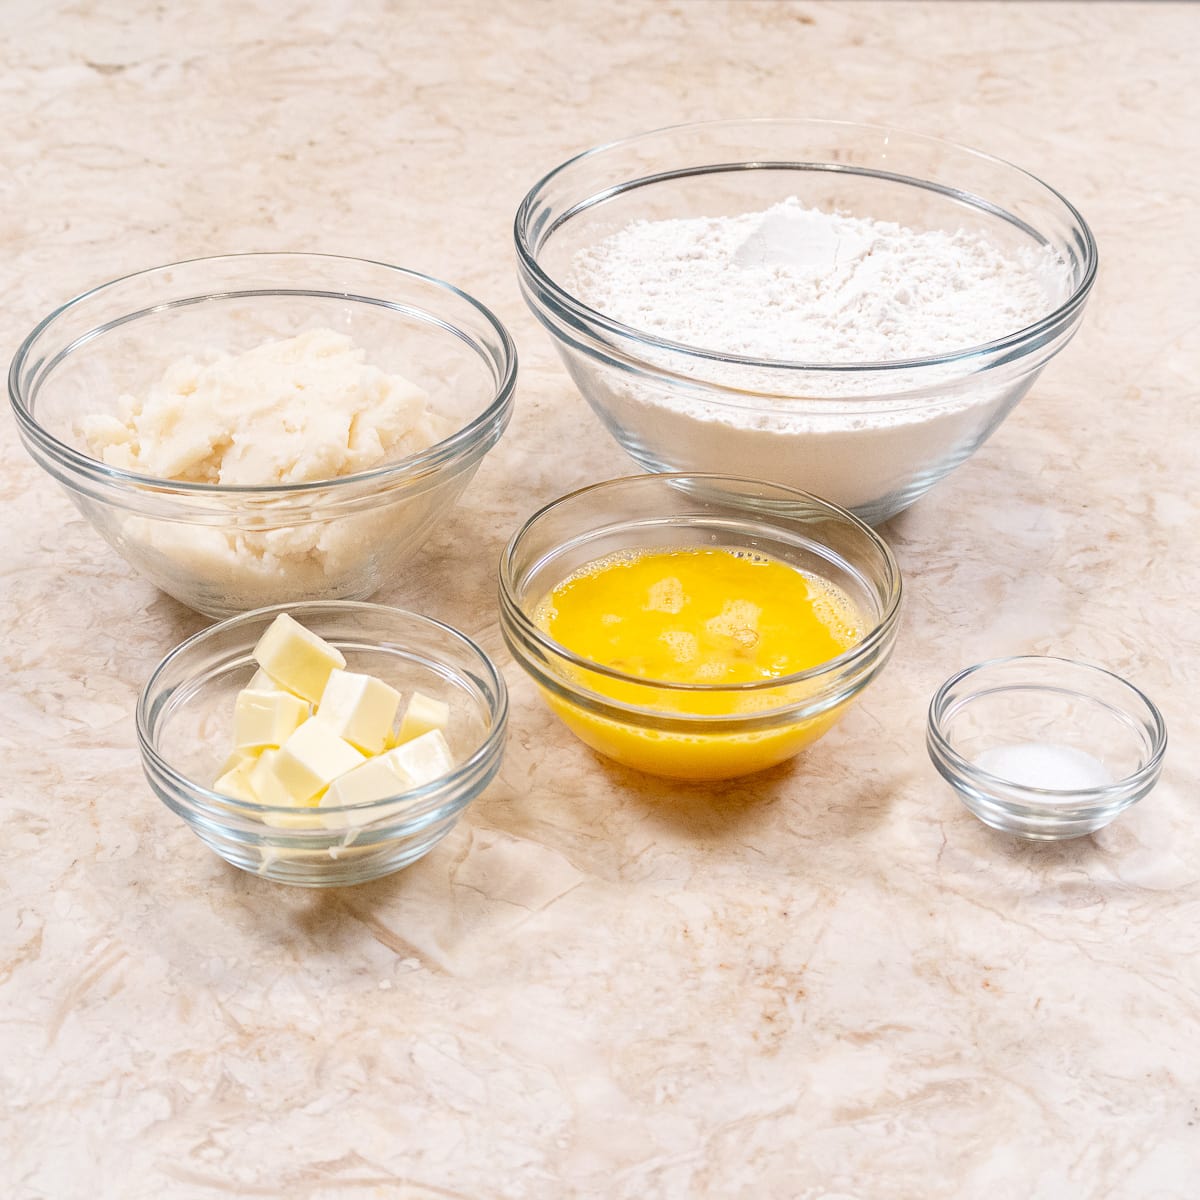 Potato Dough Ingredients for Plum dumplings